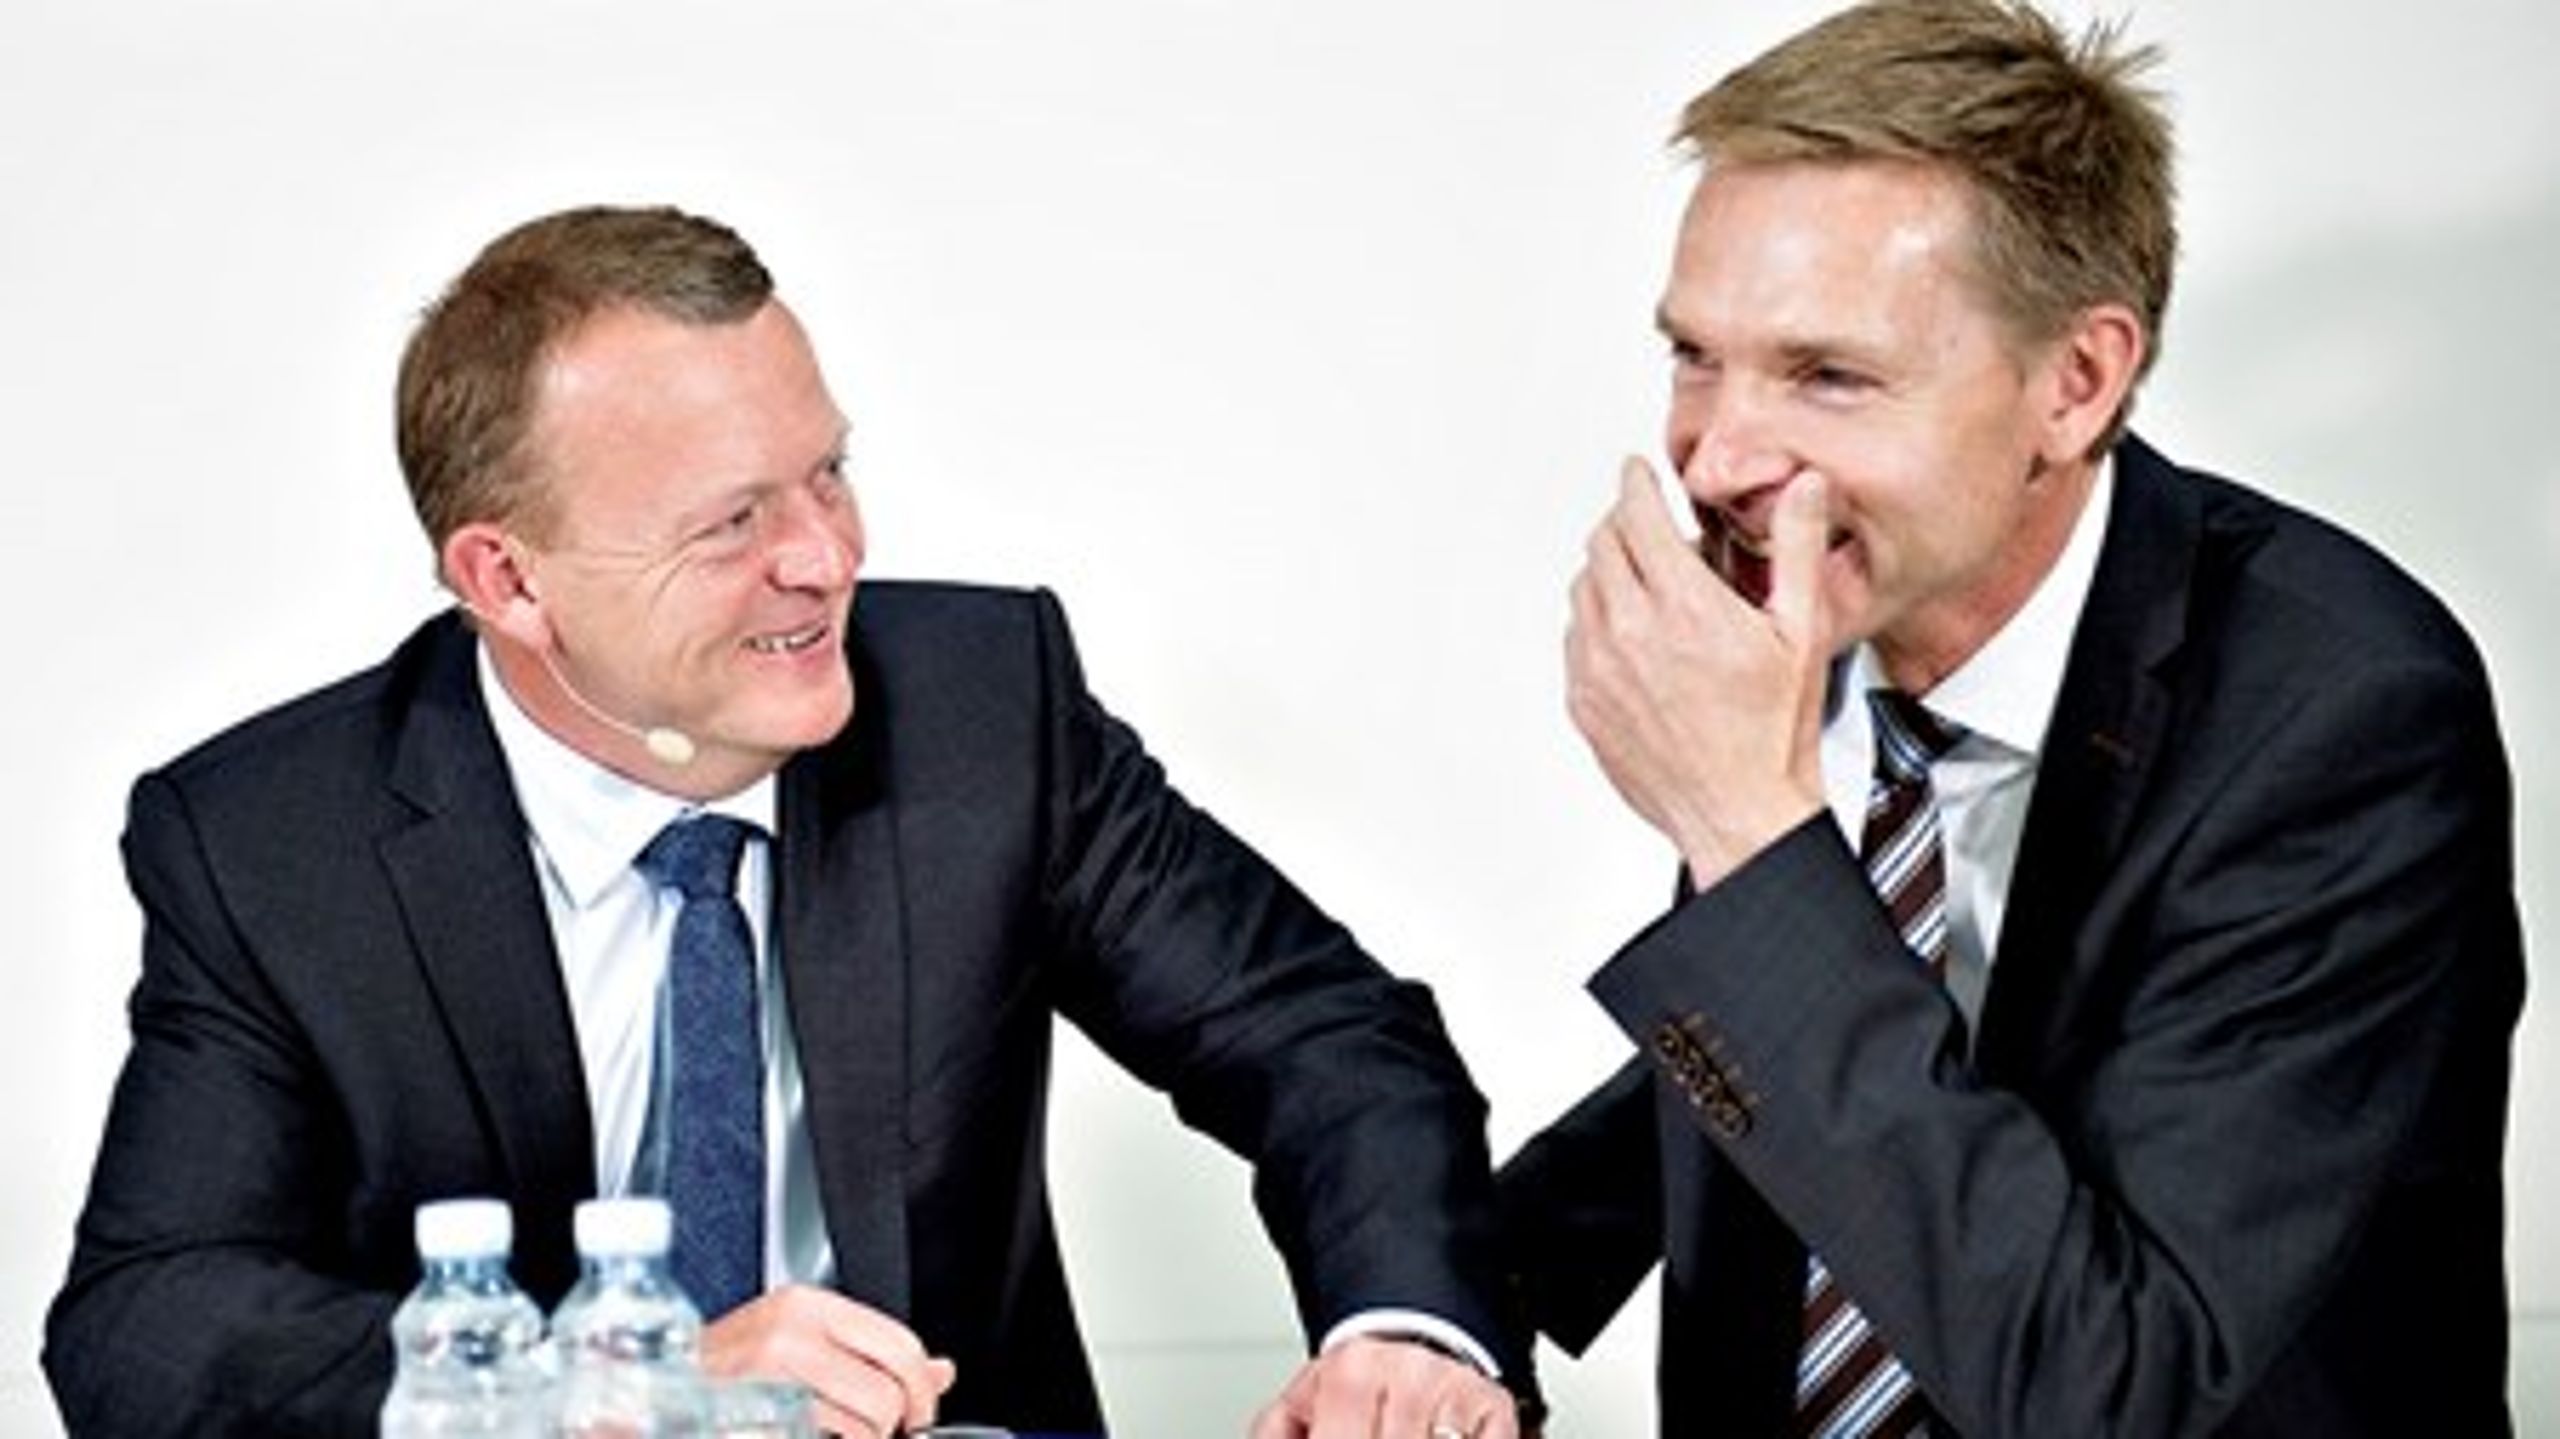 Lars Løkke Rasmussen og Kristian Thulesen Dahl kommer&nbsp;fint ud af det med hinanden&nbsp;som personer, men det&nbsp;har ikke blødgjort de politiske fronter imellem dem.&nbsp;&nbsp;<br>